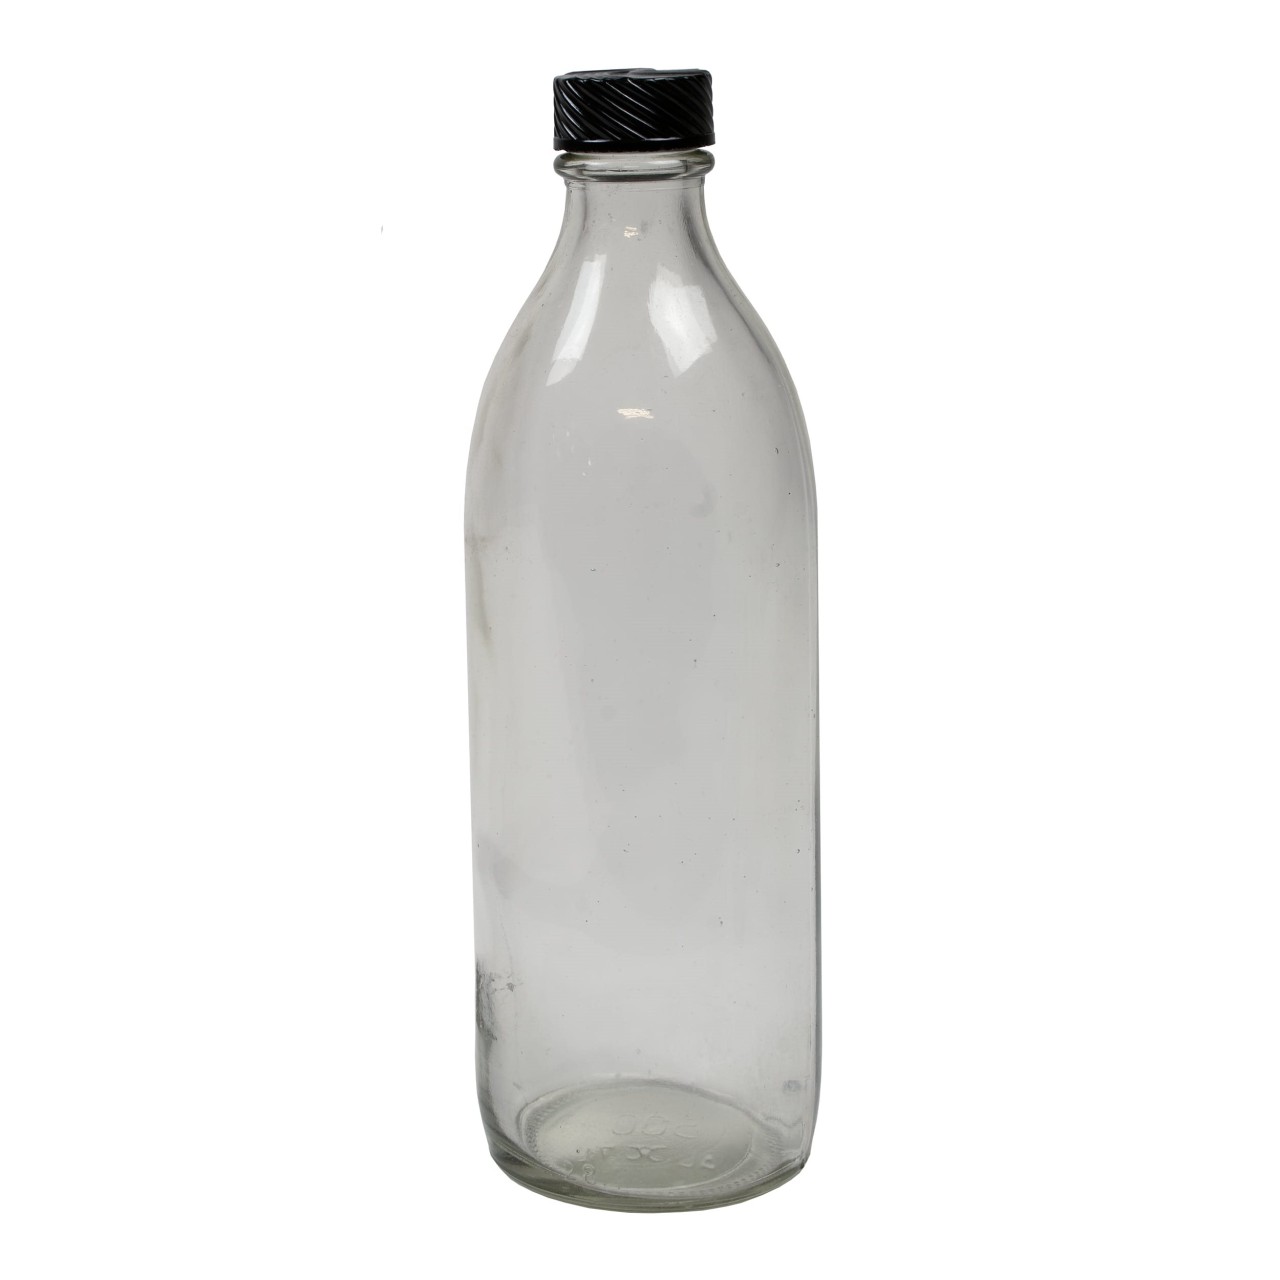 Fľaštička sklenená s úzkym hrdlom 1000ml / 1litr s plastovým viečkom